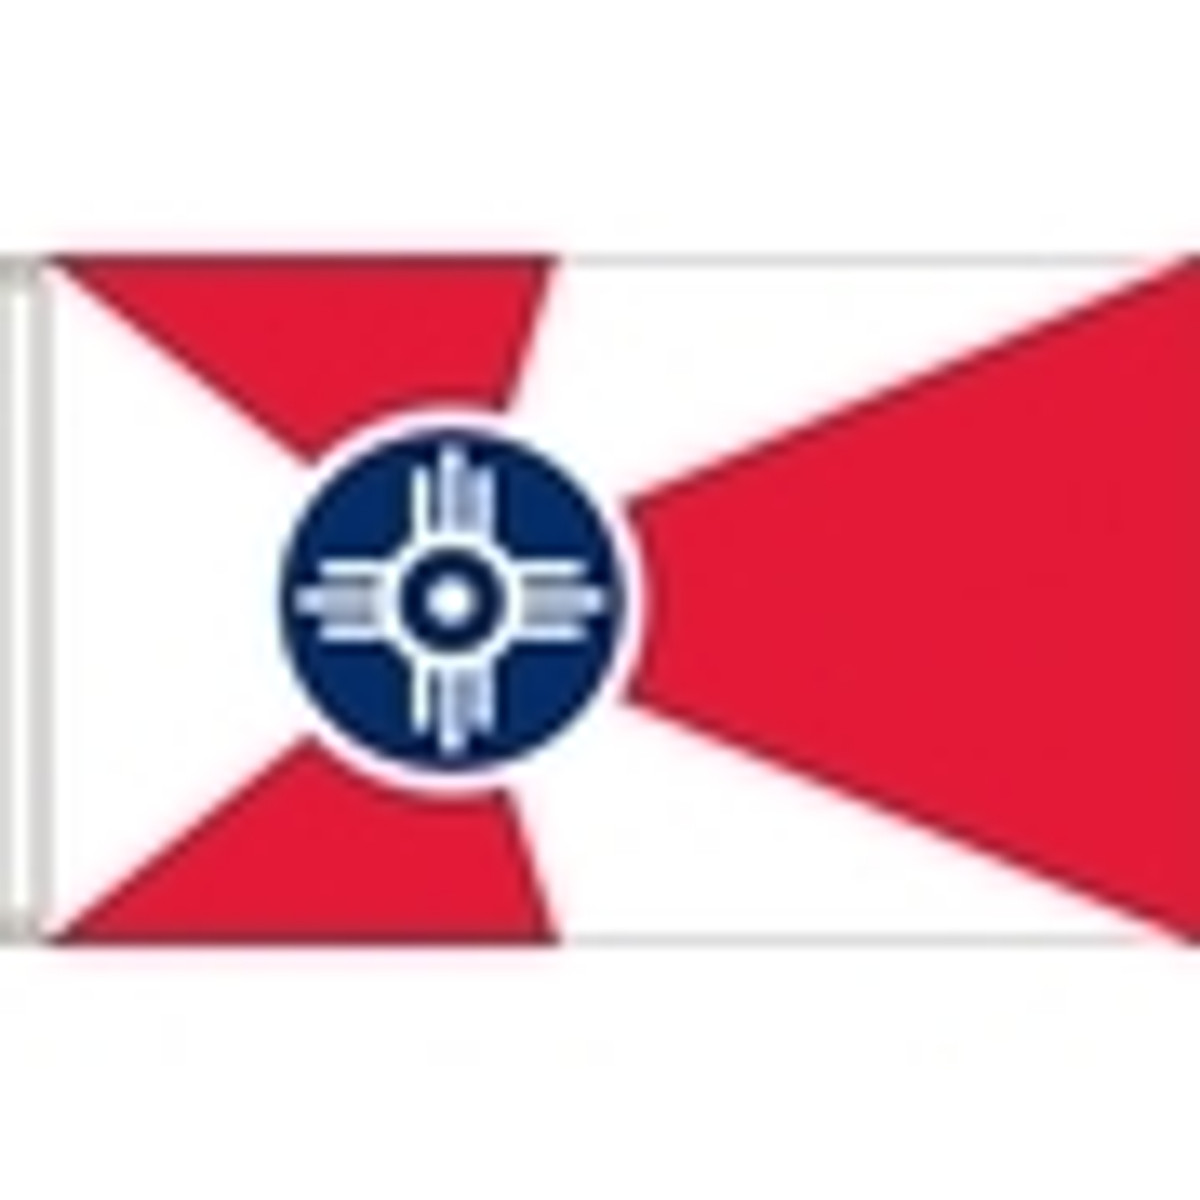 Wichita City Flags